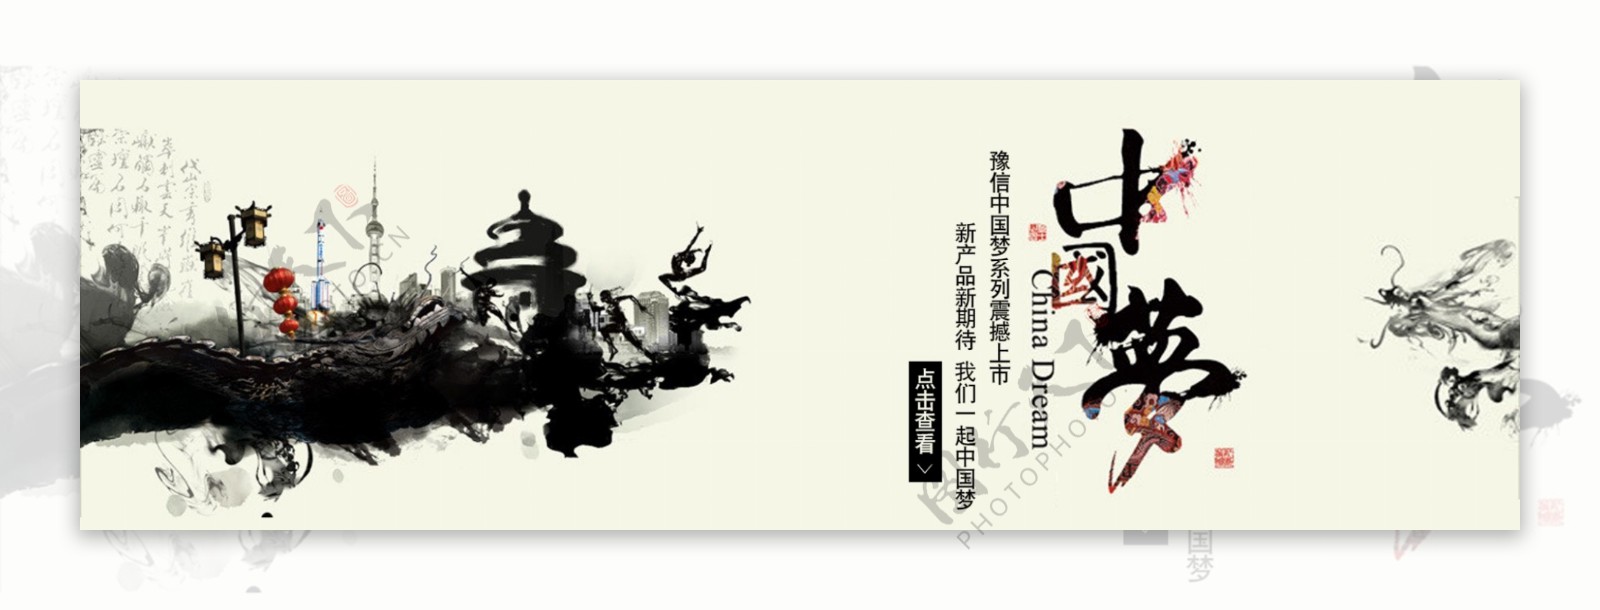 中国风水墨中国梦店铺海报图